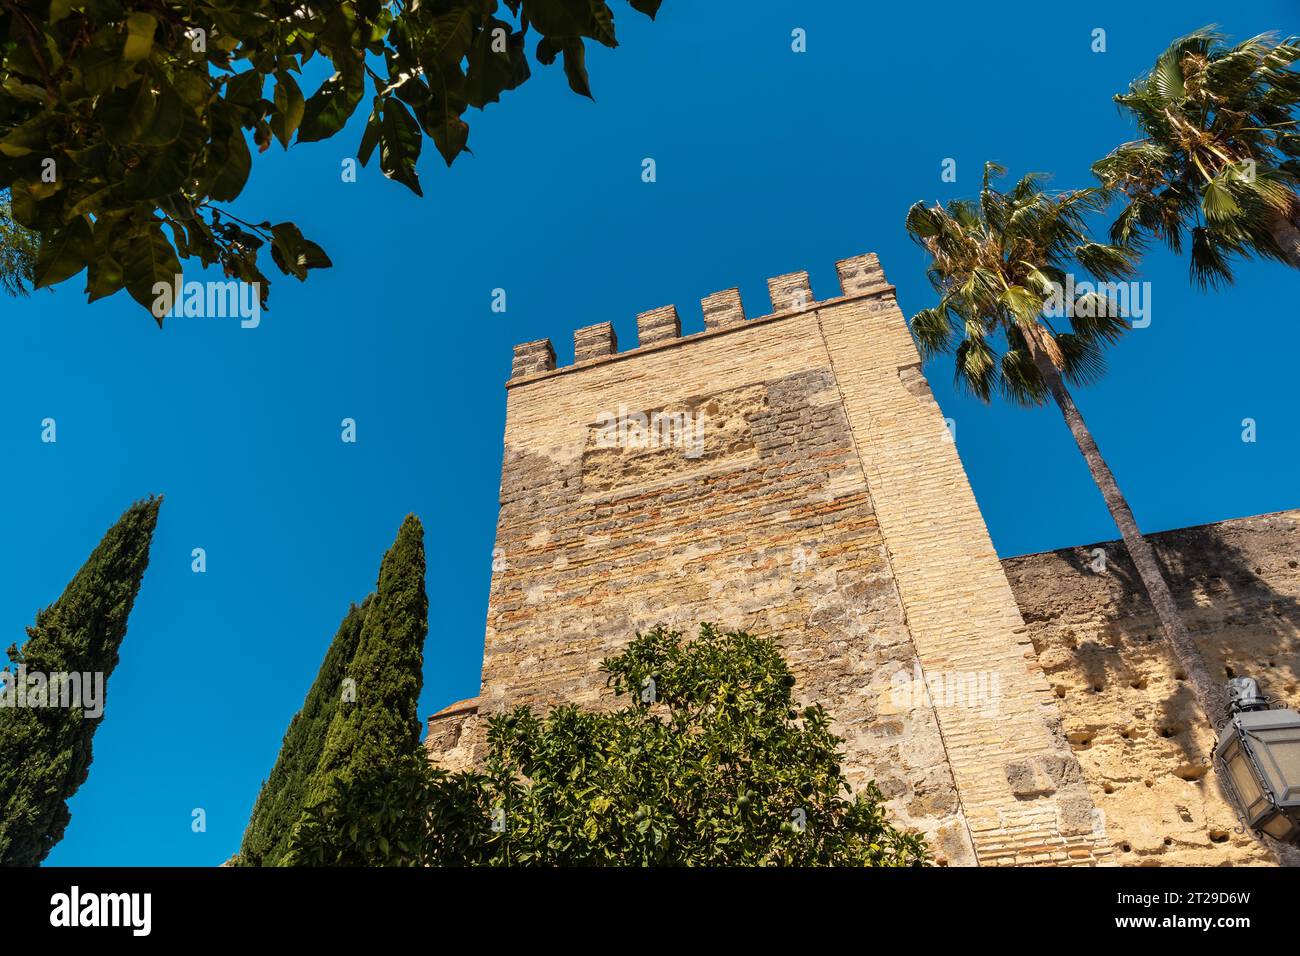 Façade de l'Alcazar fortifié d'origine almohade, population de Jerez de la Frontera à Cadix, Andalousie Banque D'Images